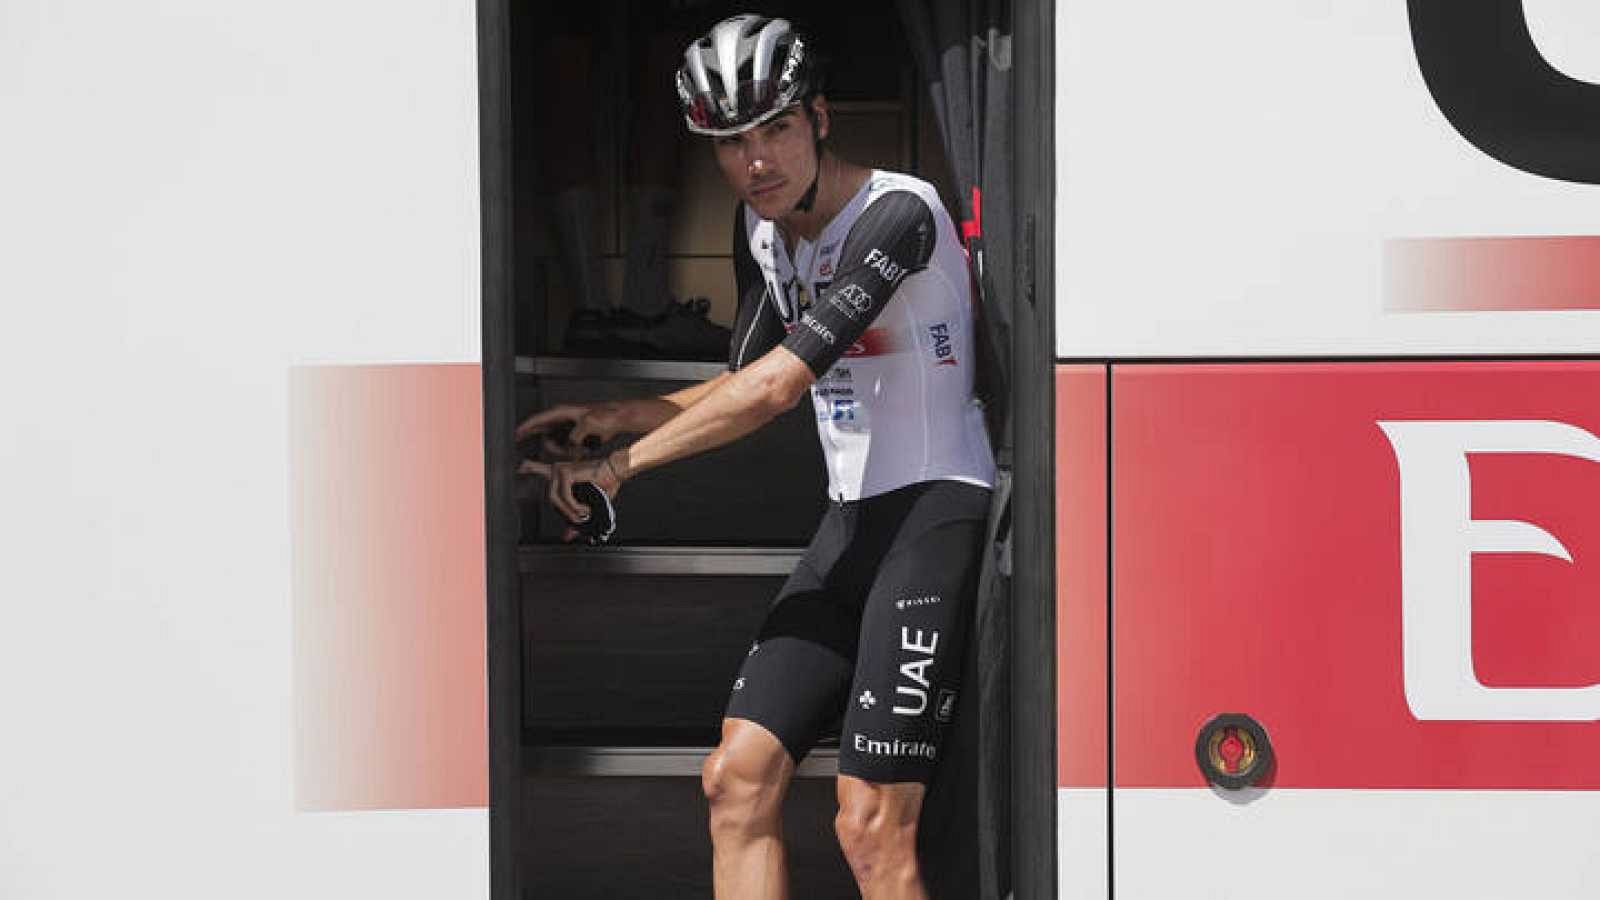 Juan Ayuso, ante el final de la Vuelta: "Prefiero arriesgar a quedar cuarto sin haberlo intentado" -- Ver ahora